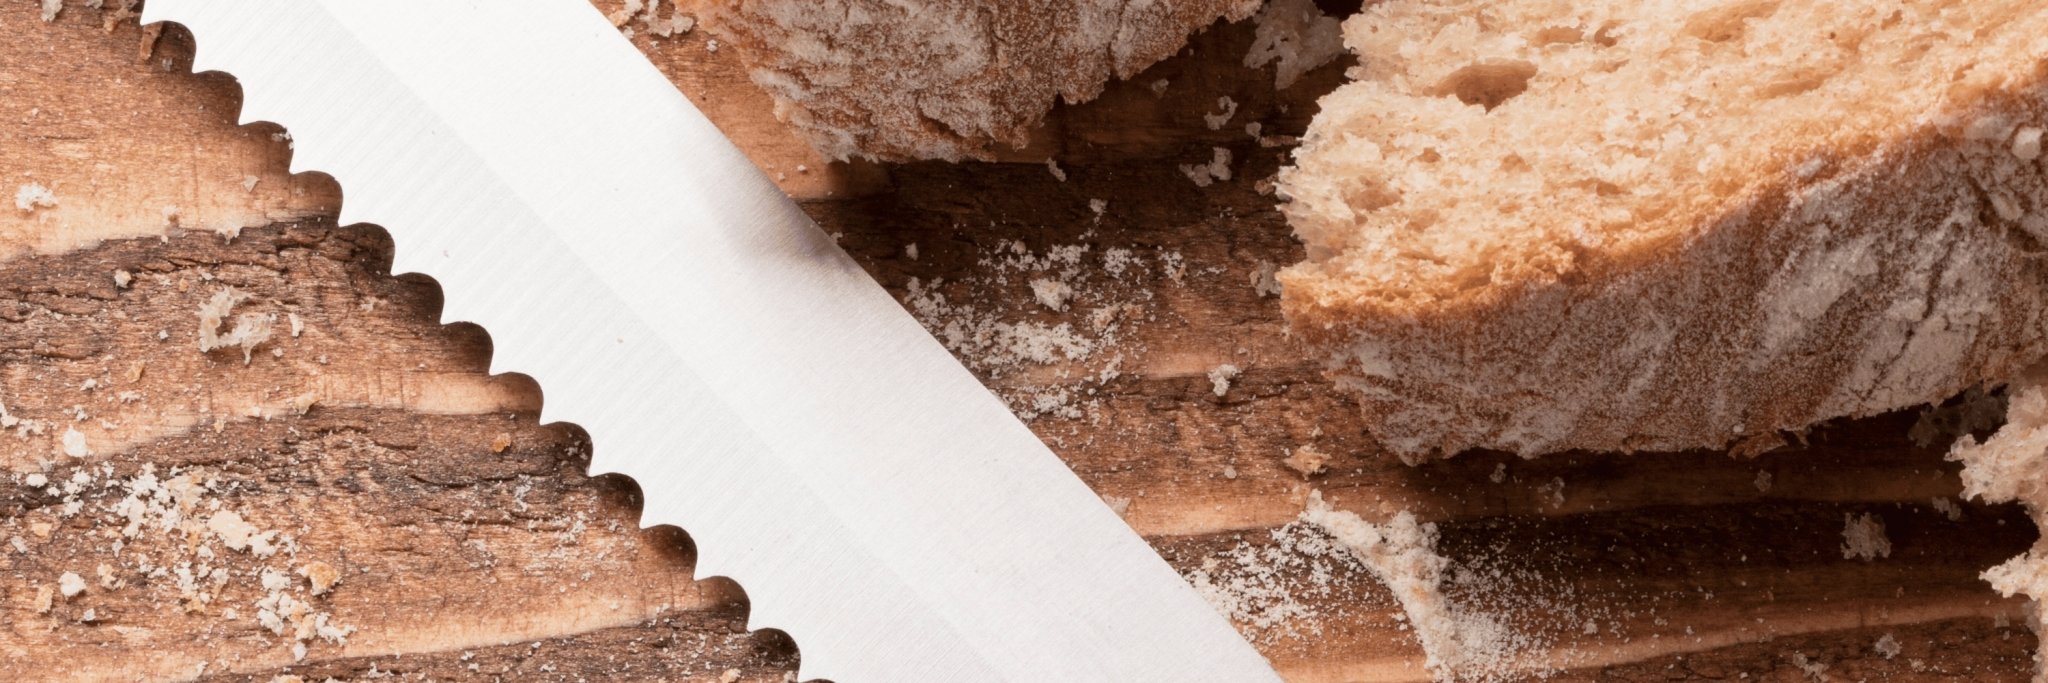 image d'une lame en bois d'un couteau à pain